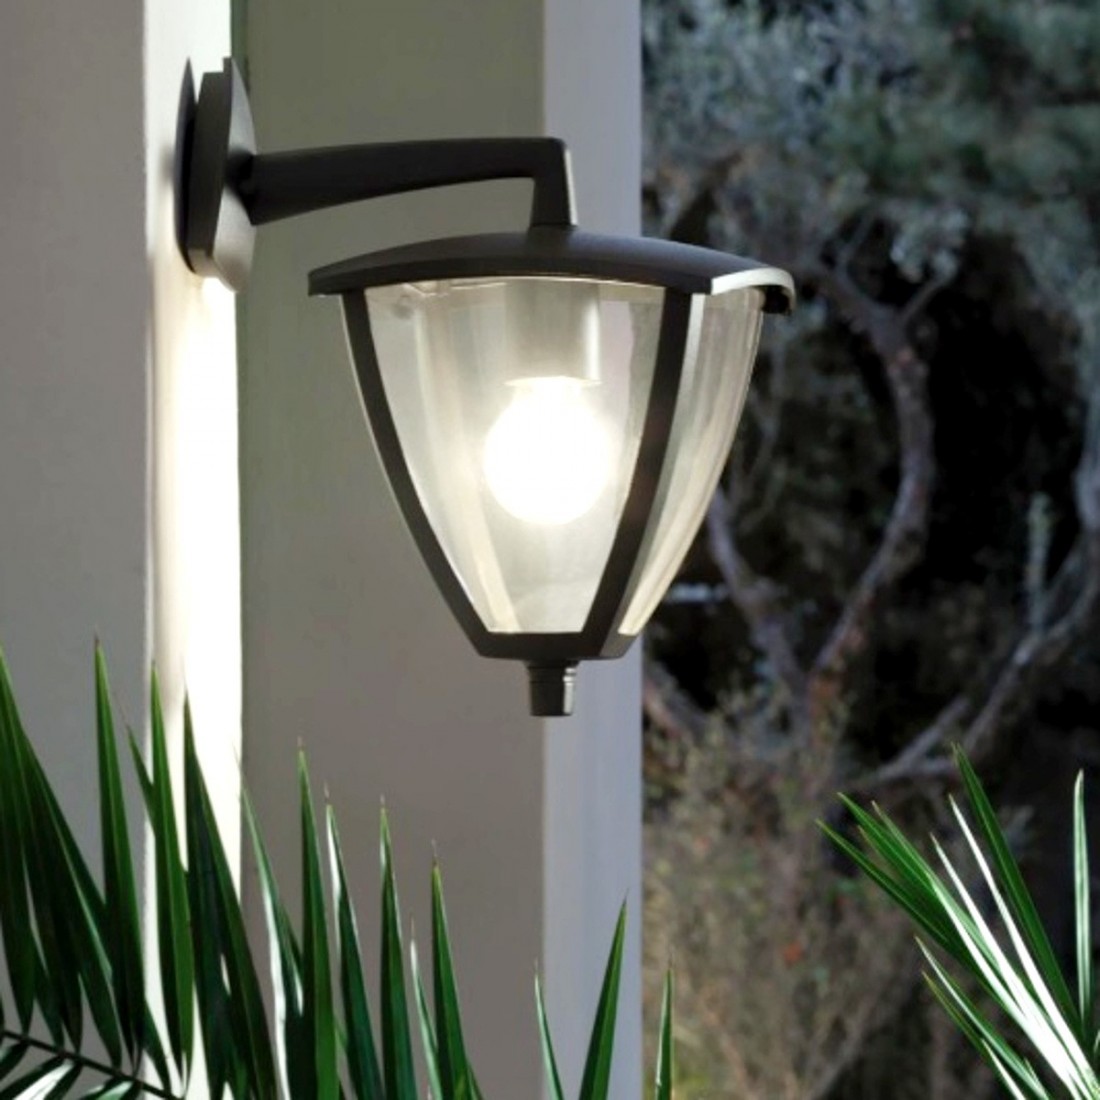 Applique LV-MIRO' 576 E27 LED luce bassa moderno alluminio grigio lampada parete esterno IP44